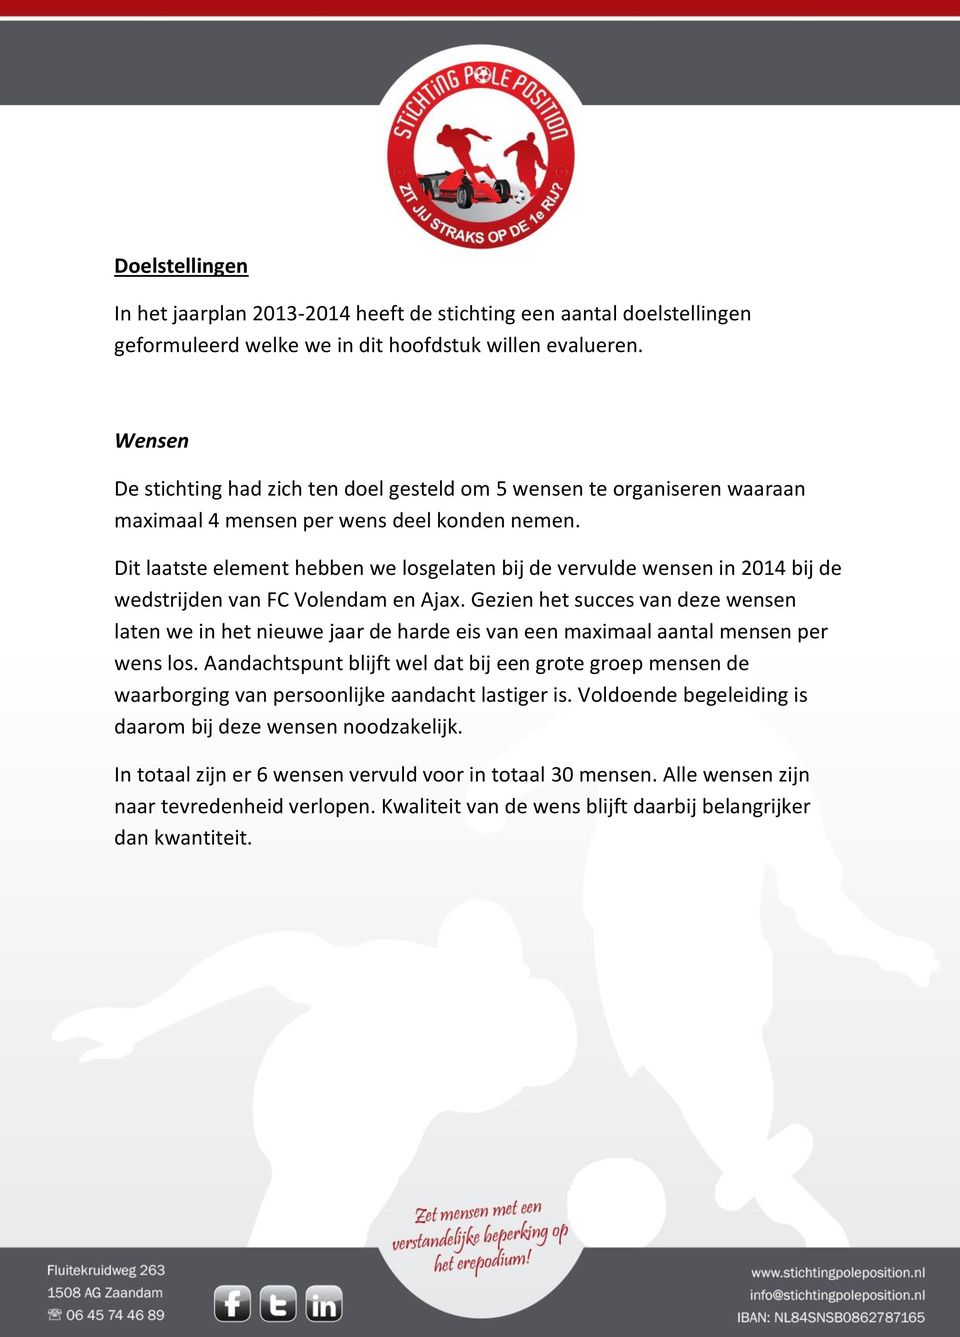 Dit laatste element hebben we losgelaten bij de vervulde wensen in 2014 bij de wedstrijden van FC Volendam en Ajax.